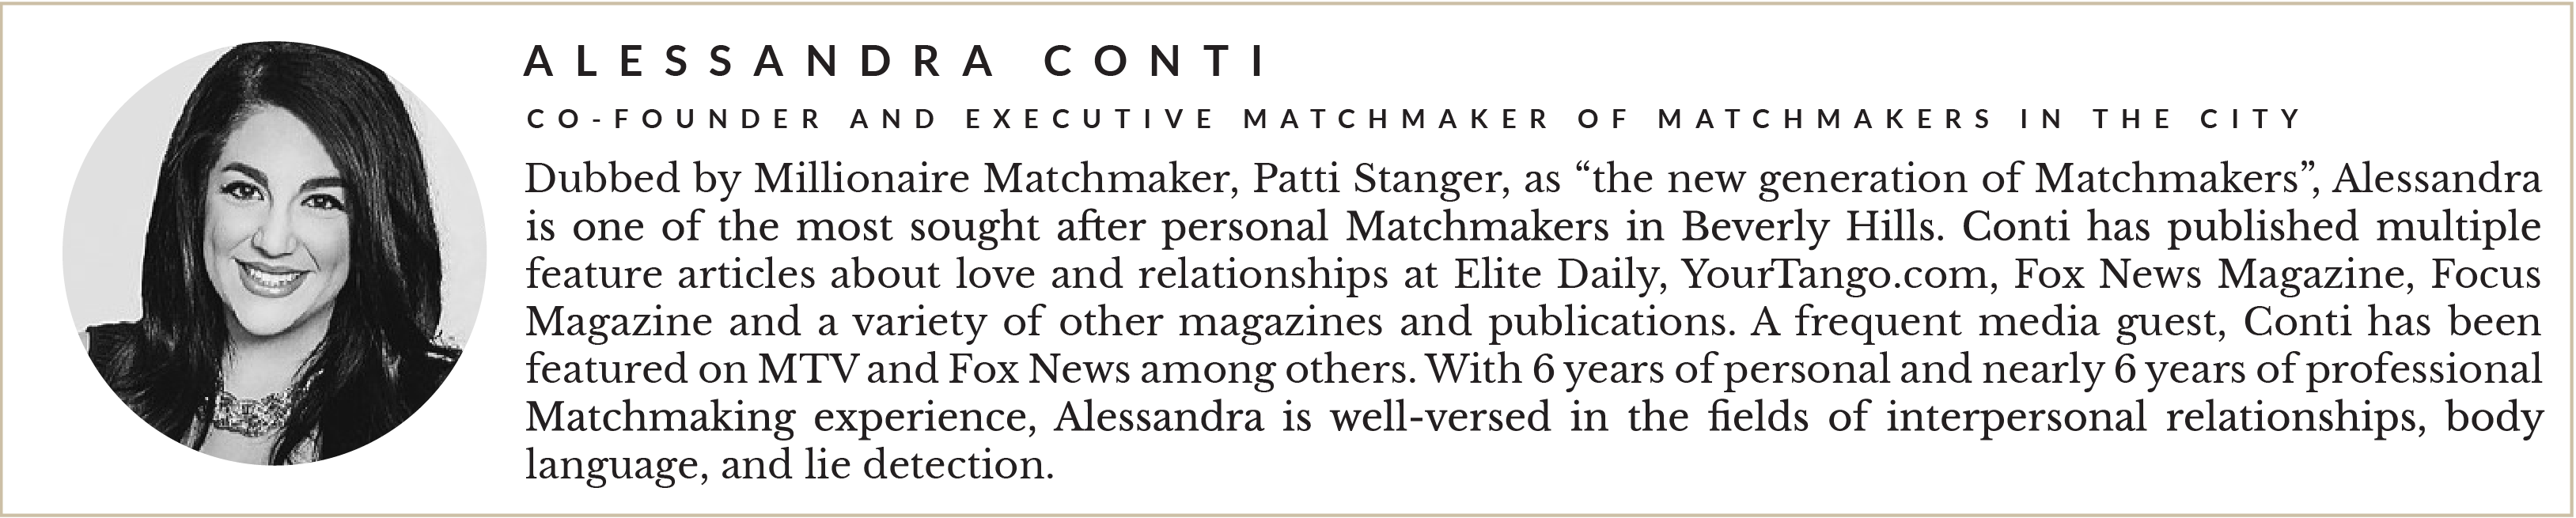 Entity presents Alessandra Conti